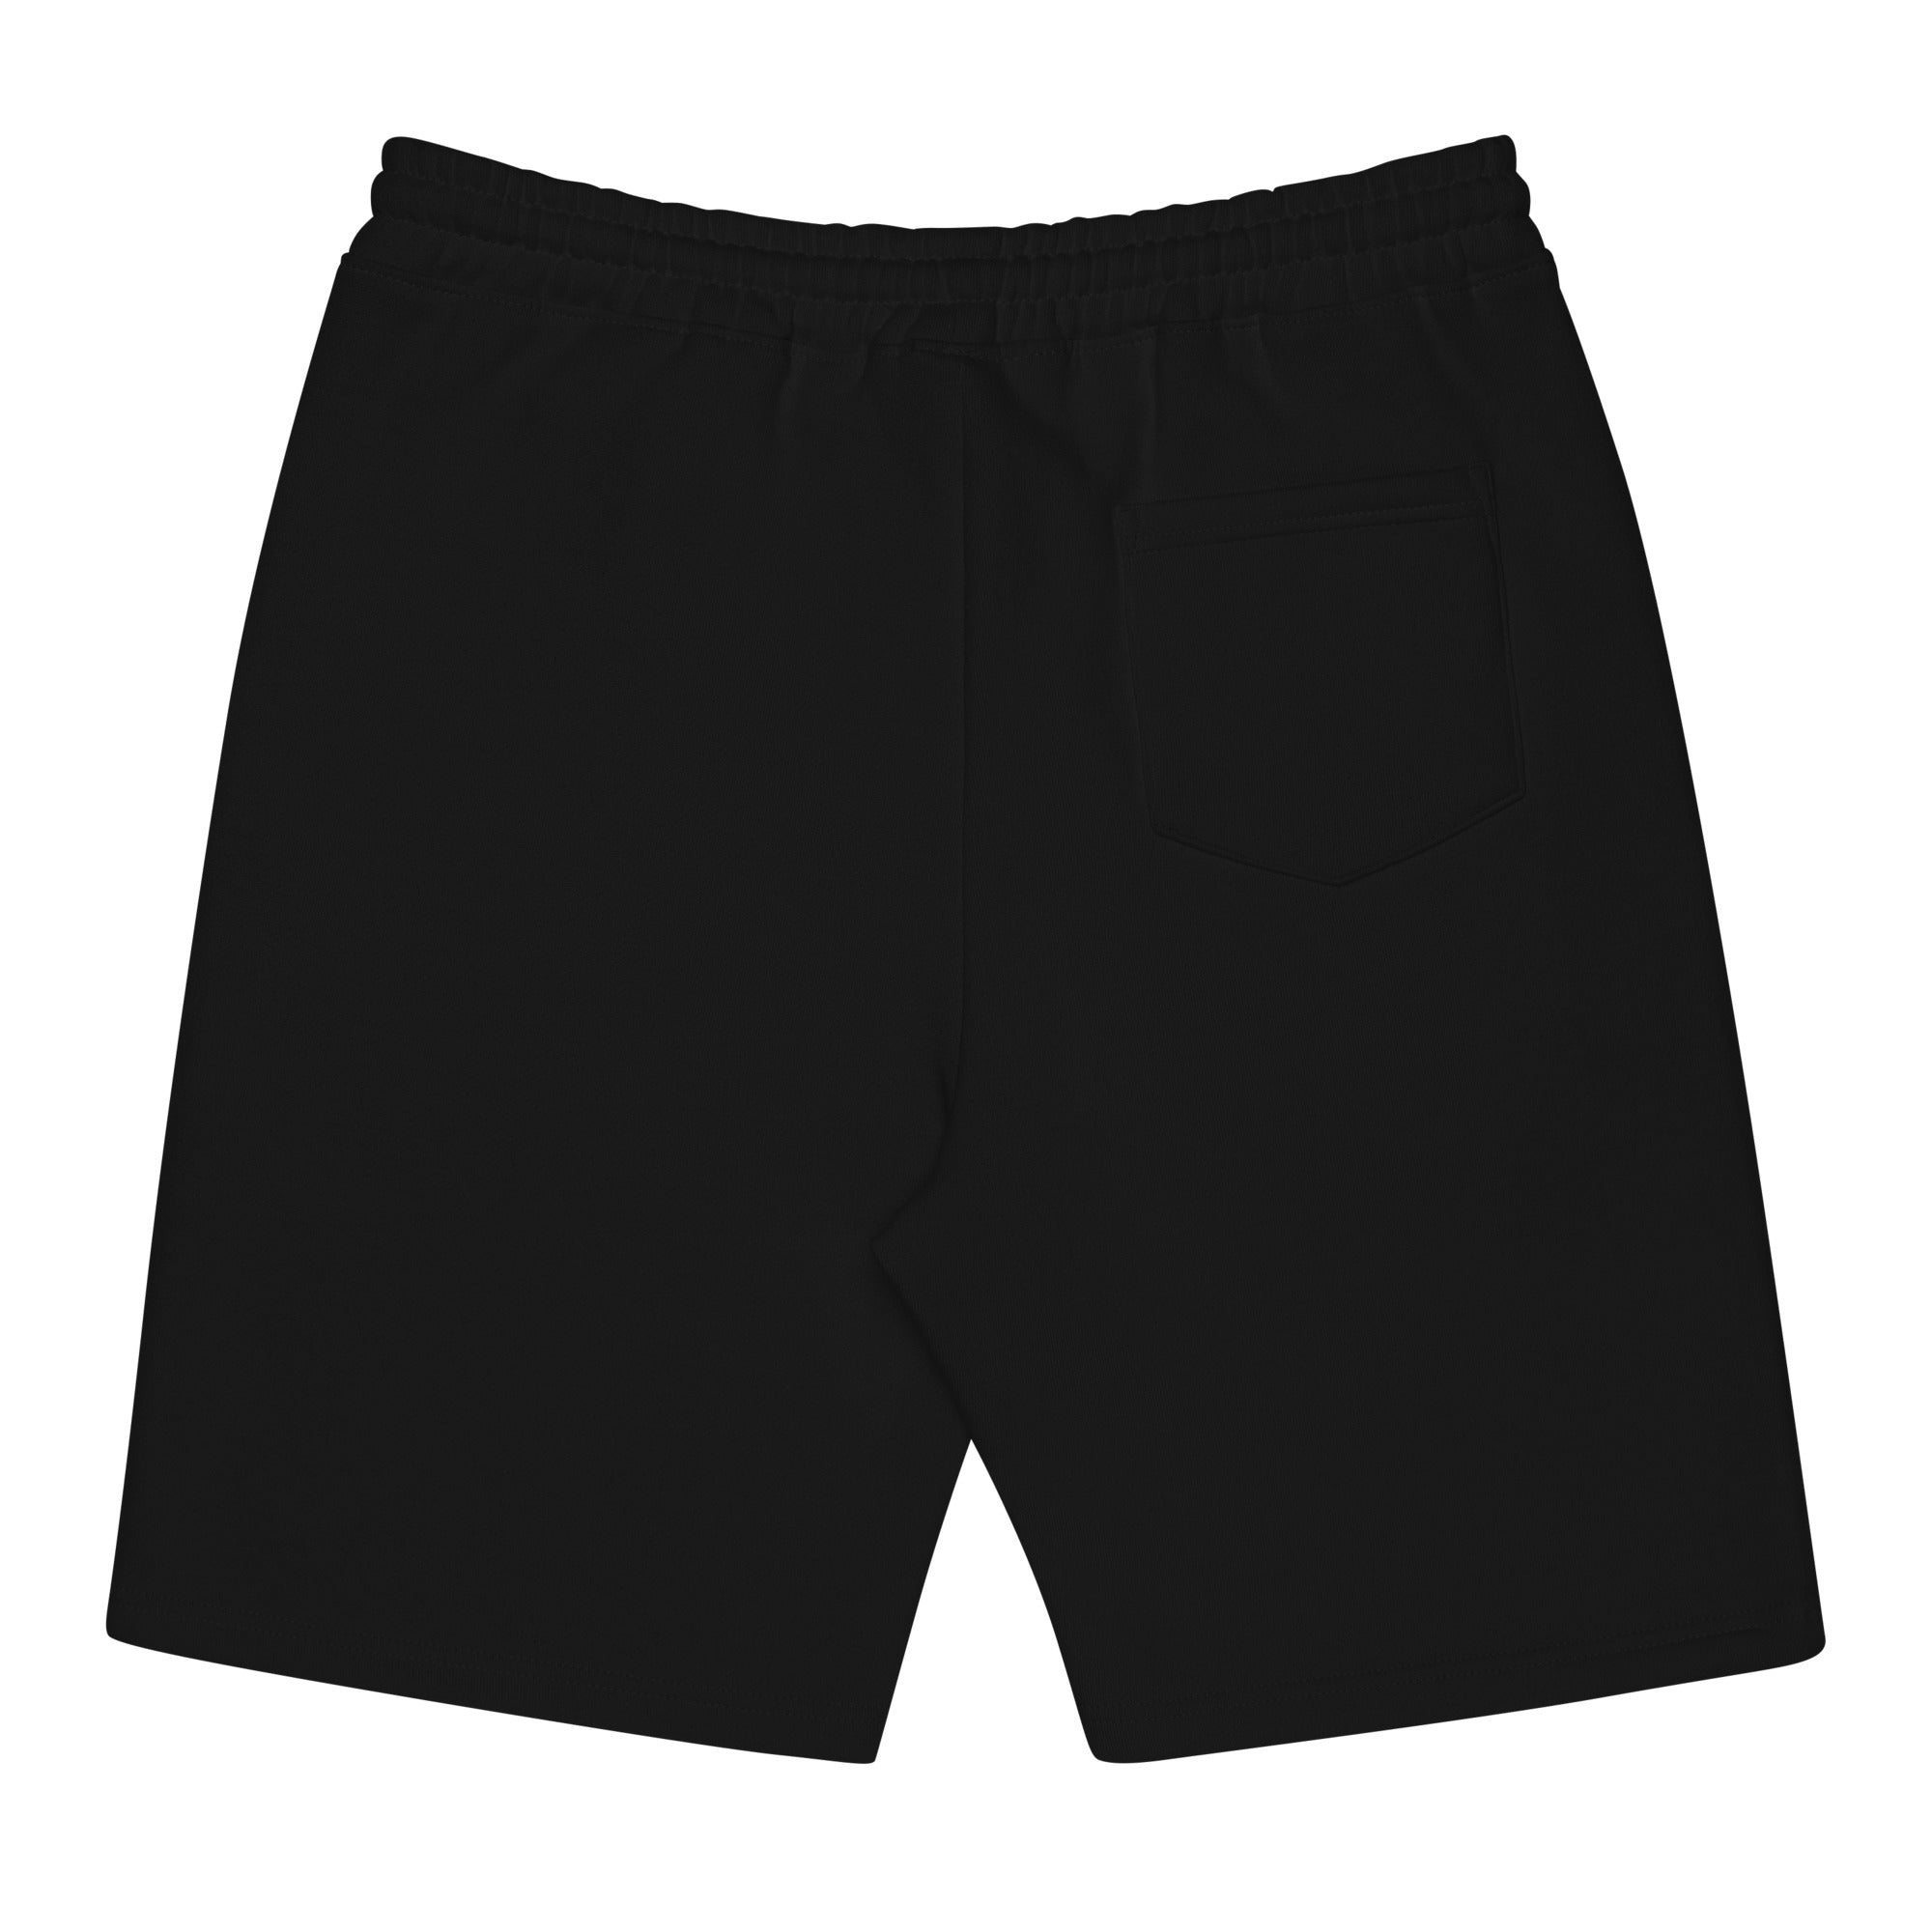 Men's Skidoosh fleece shorts